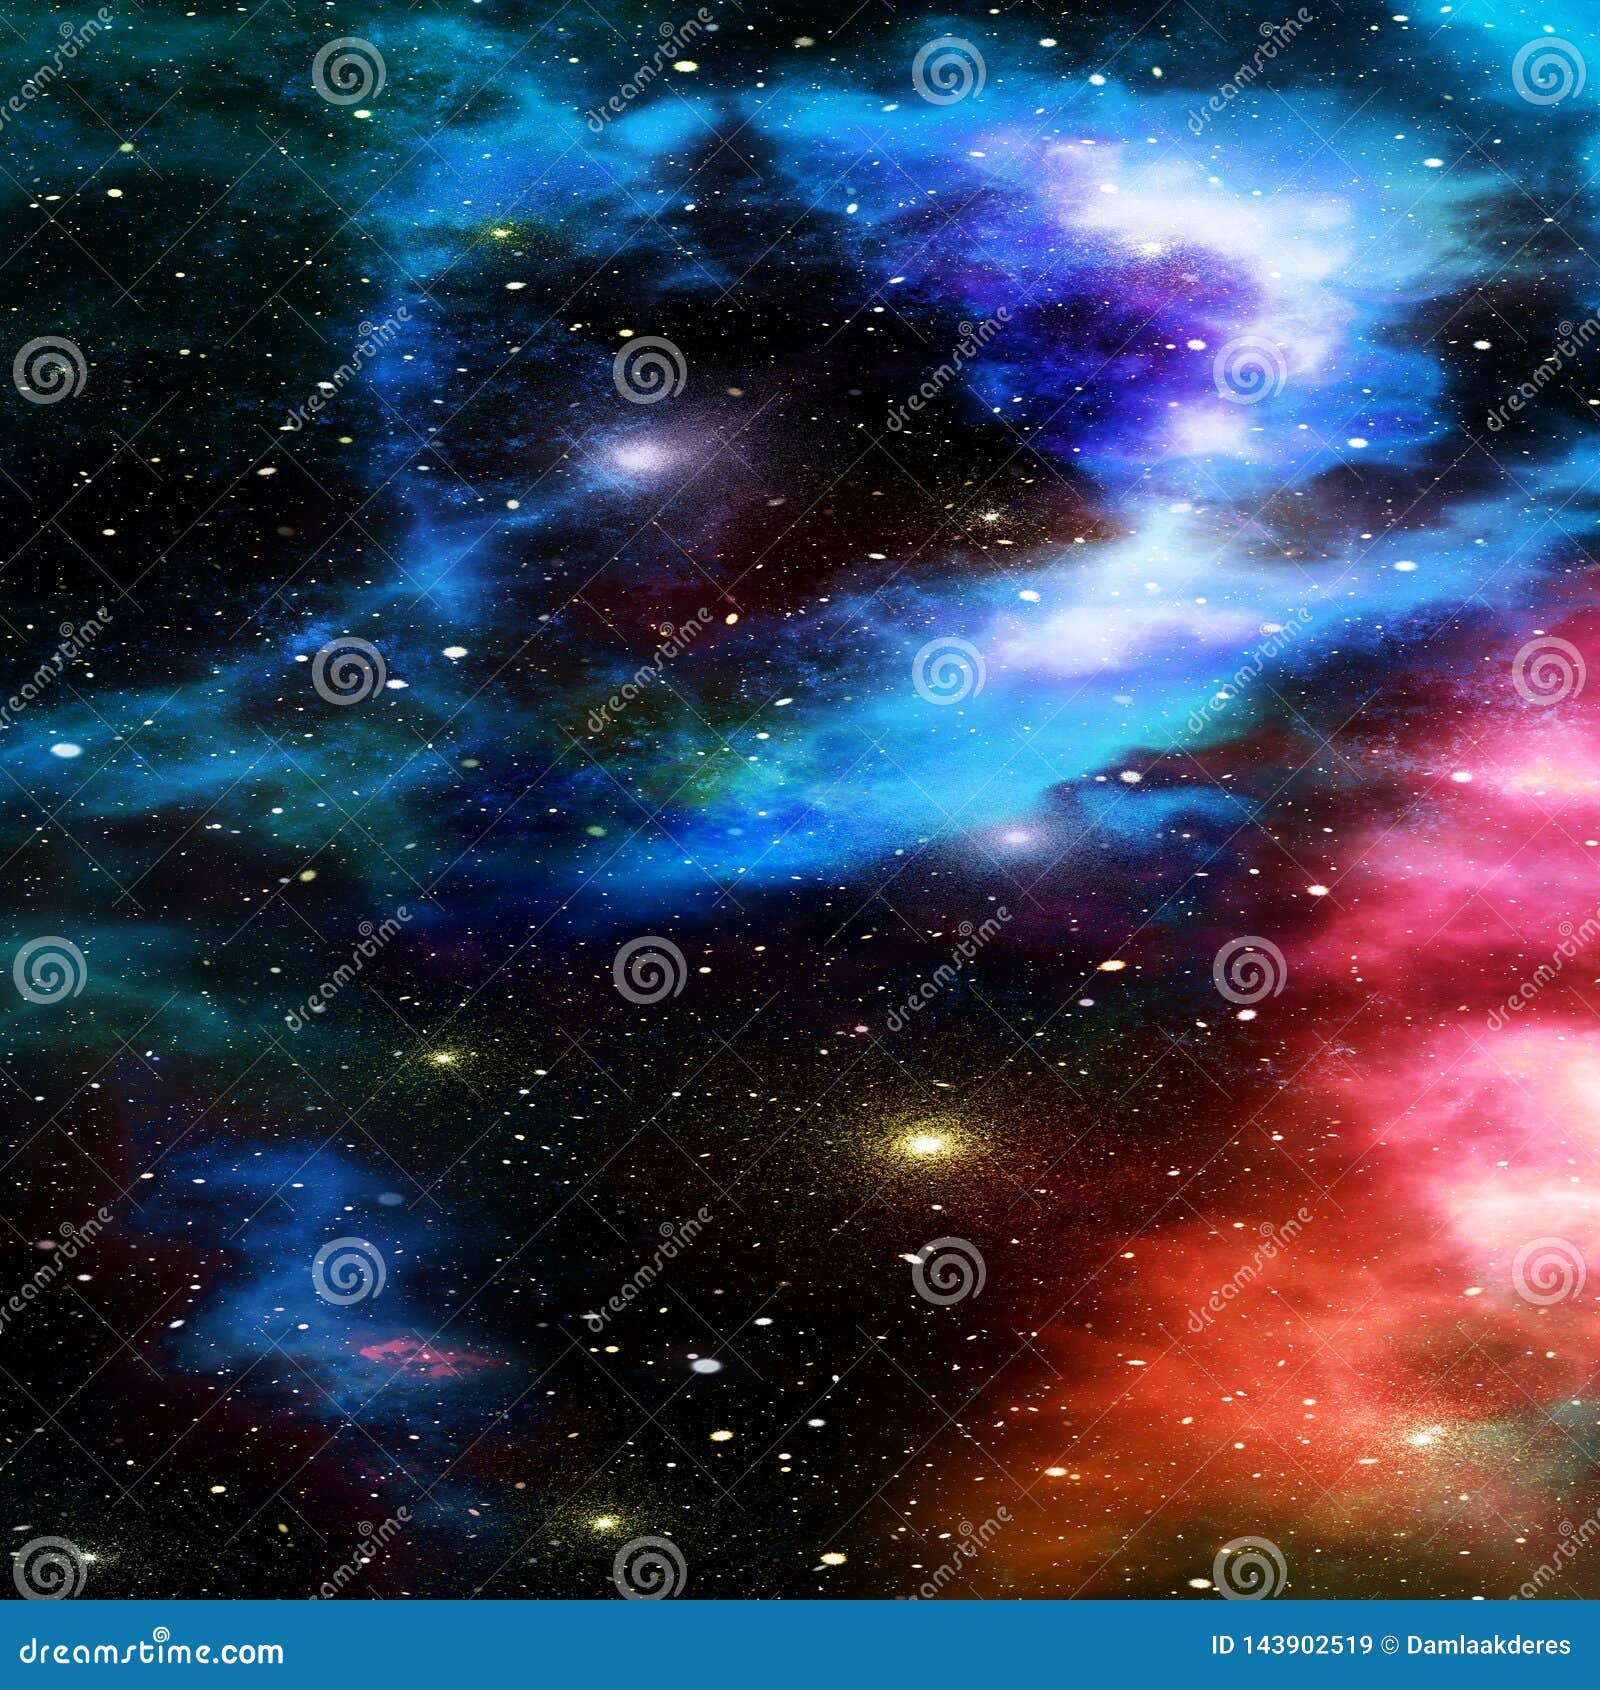 Sử dụng hình nền không gian để trang trí máy tính và nhận diện với thế giới vô tận từ các thiên hà, hình ảnh của các trái đất, các vì sao và đám mây thiên thạch.